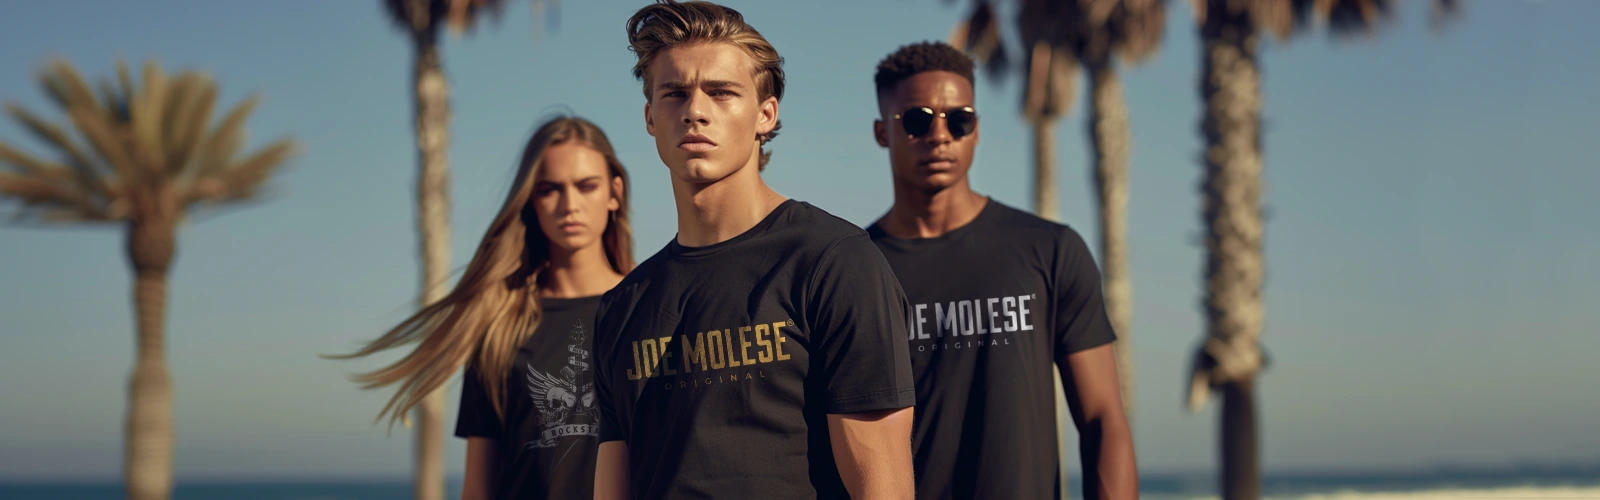 Joe Molese Premium T-Shirts online kaufen